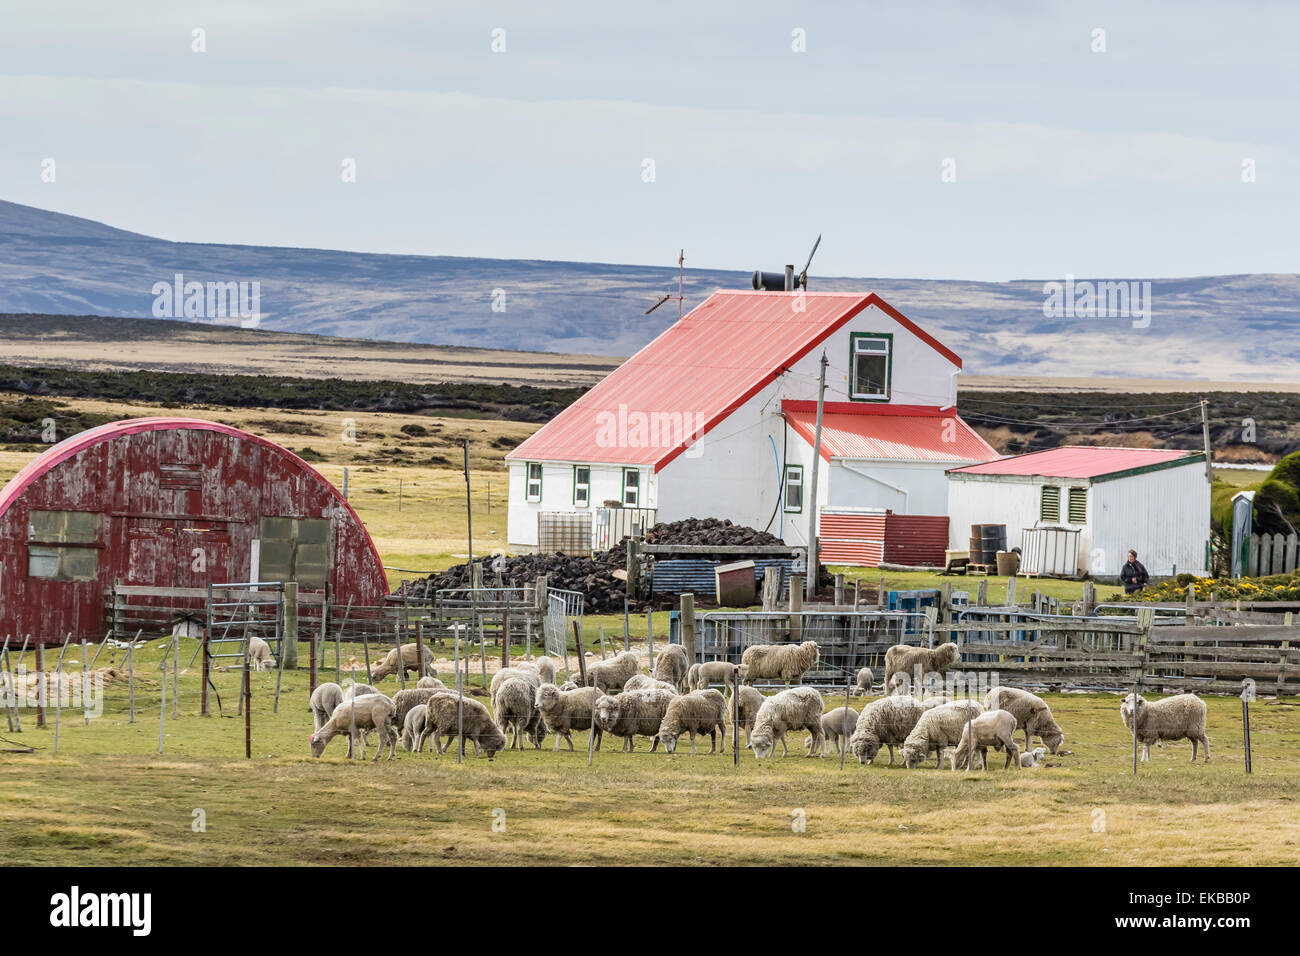 Ovejas esperando ser esquilados en Long Island explotaciones de ovejas, fuera de Stanley, Islas Malvinas, Reino Unido protectorado extranjero Foto de stock